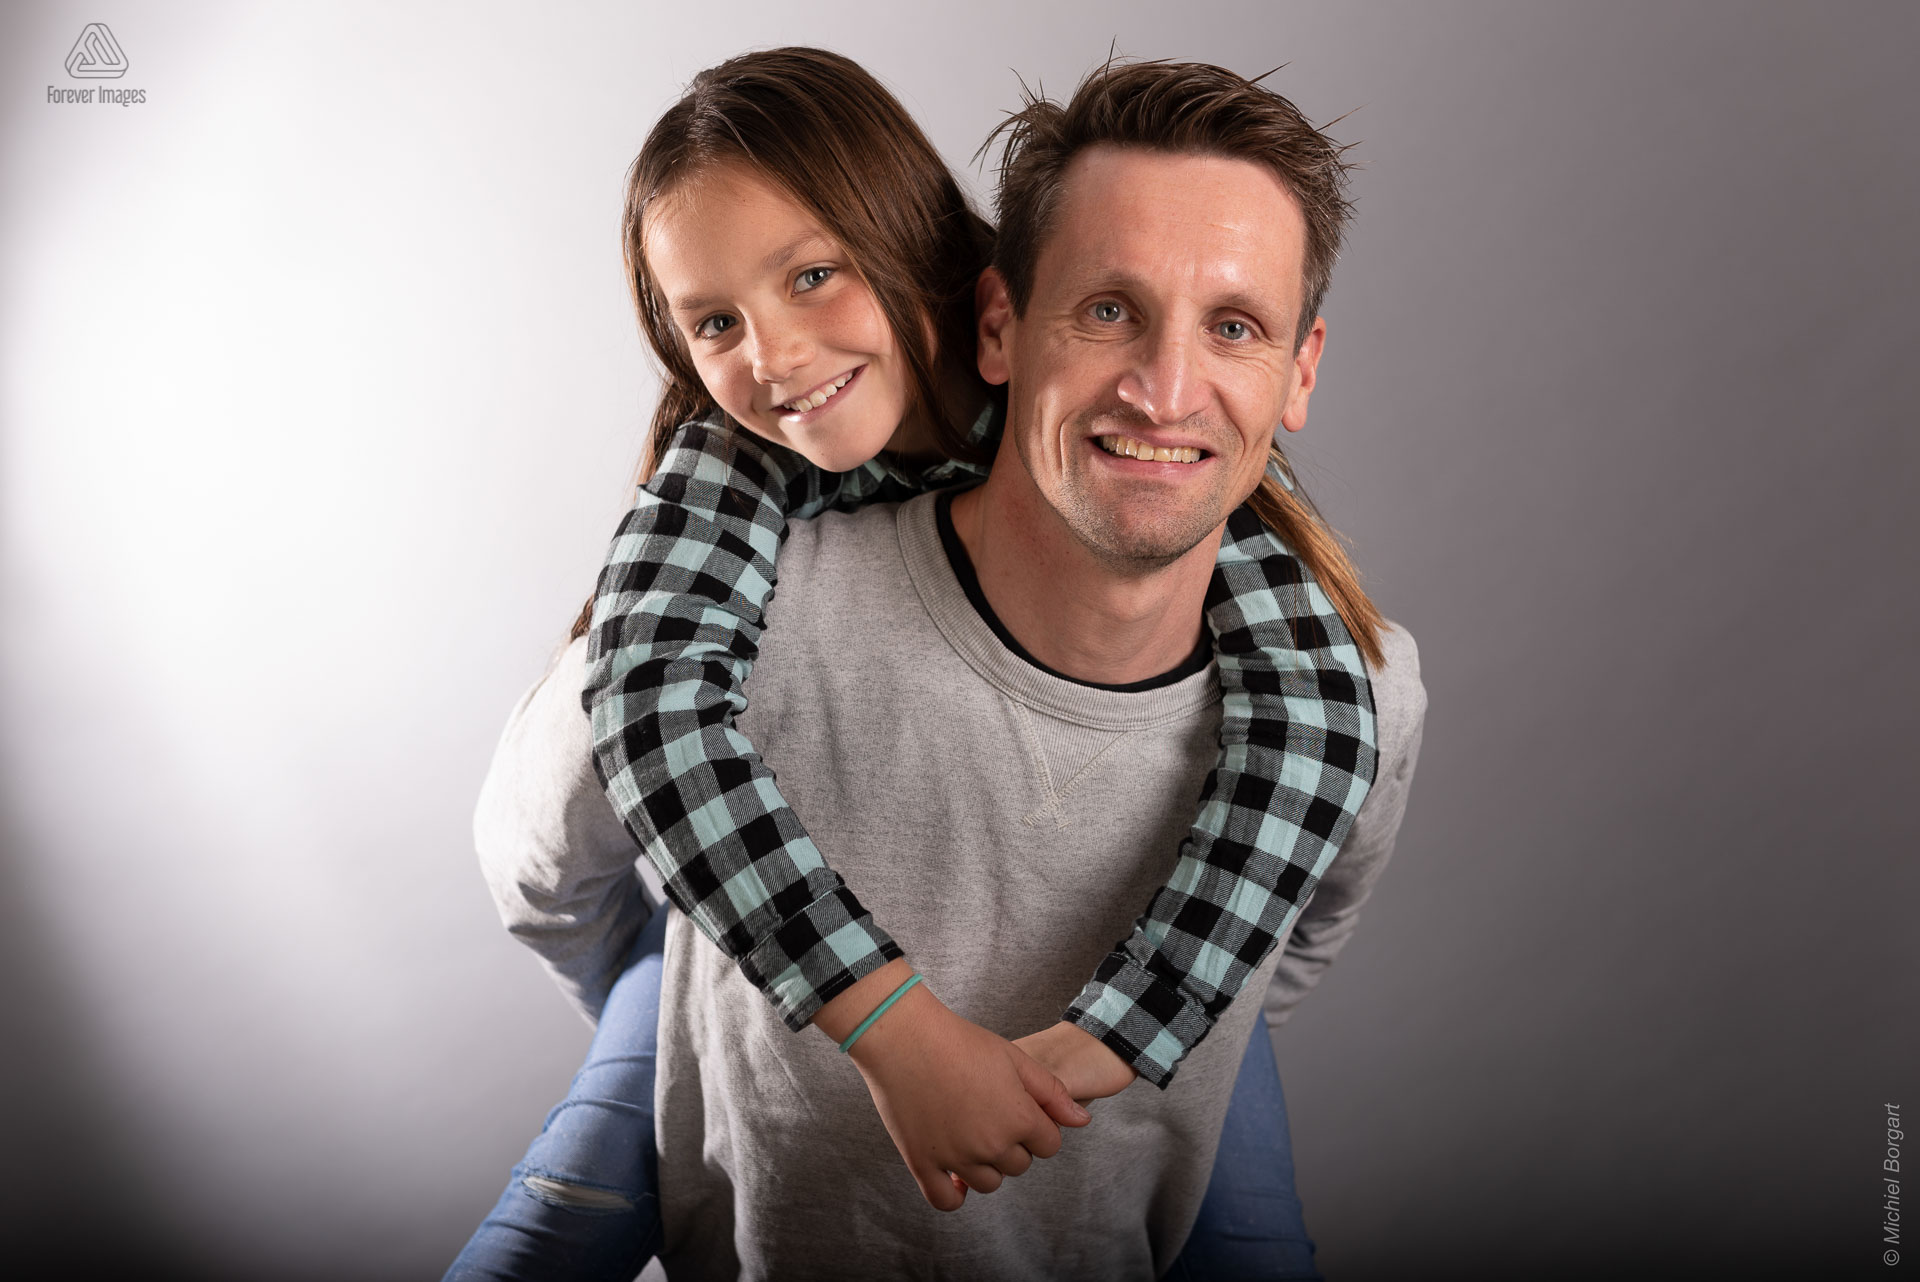 Portretfoto vader met dochter op zijn rug | Ewout Meijer | Portretfotograaf Michiel Borgart - Forever Images.